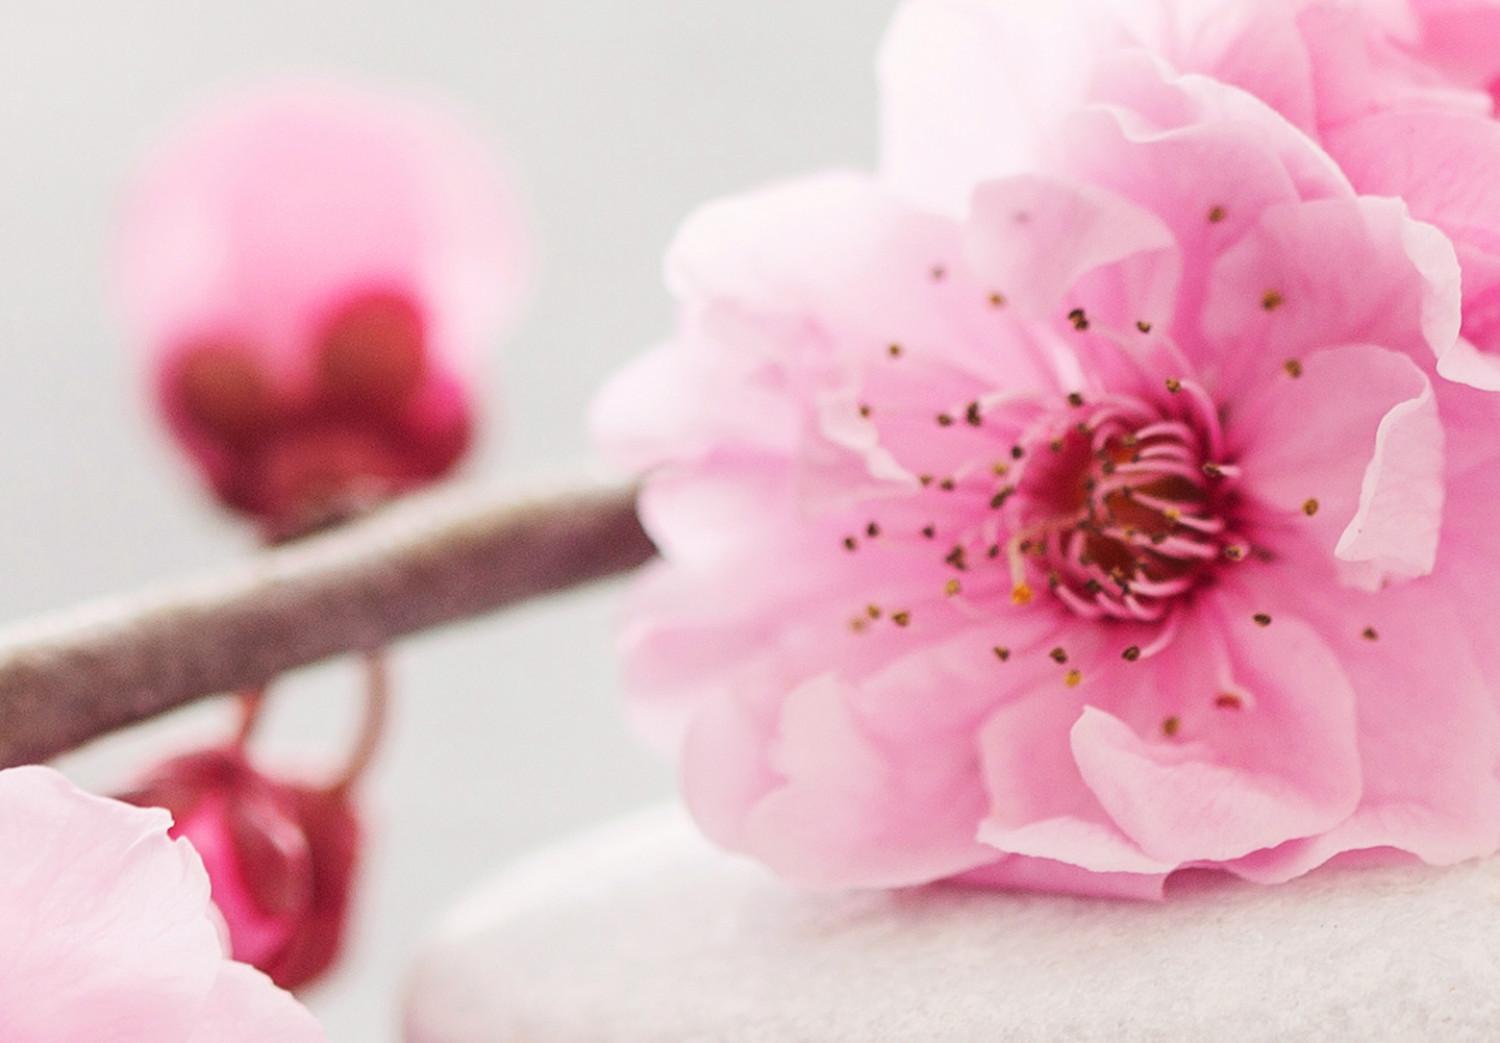 Cuadro decorativo Zen: Cherry Blossoms II